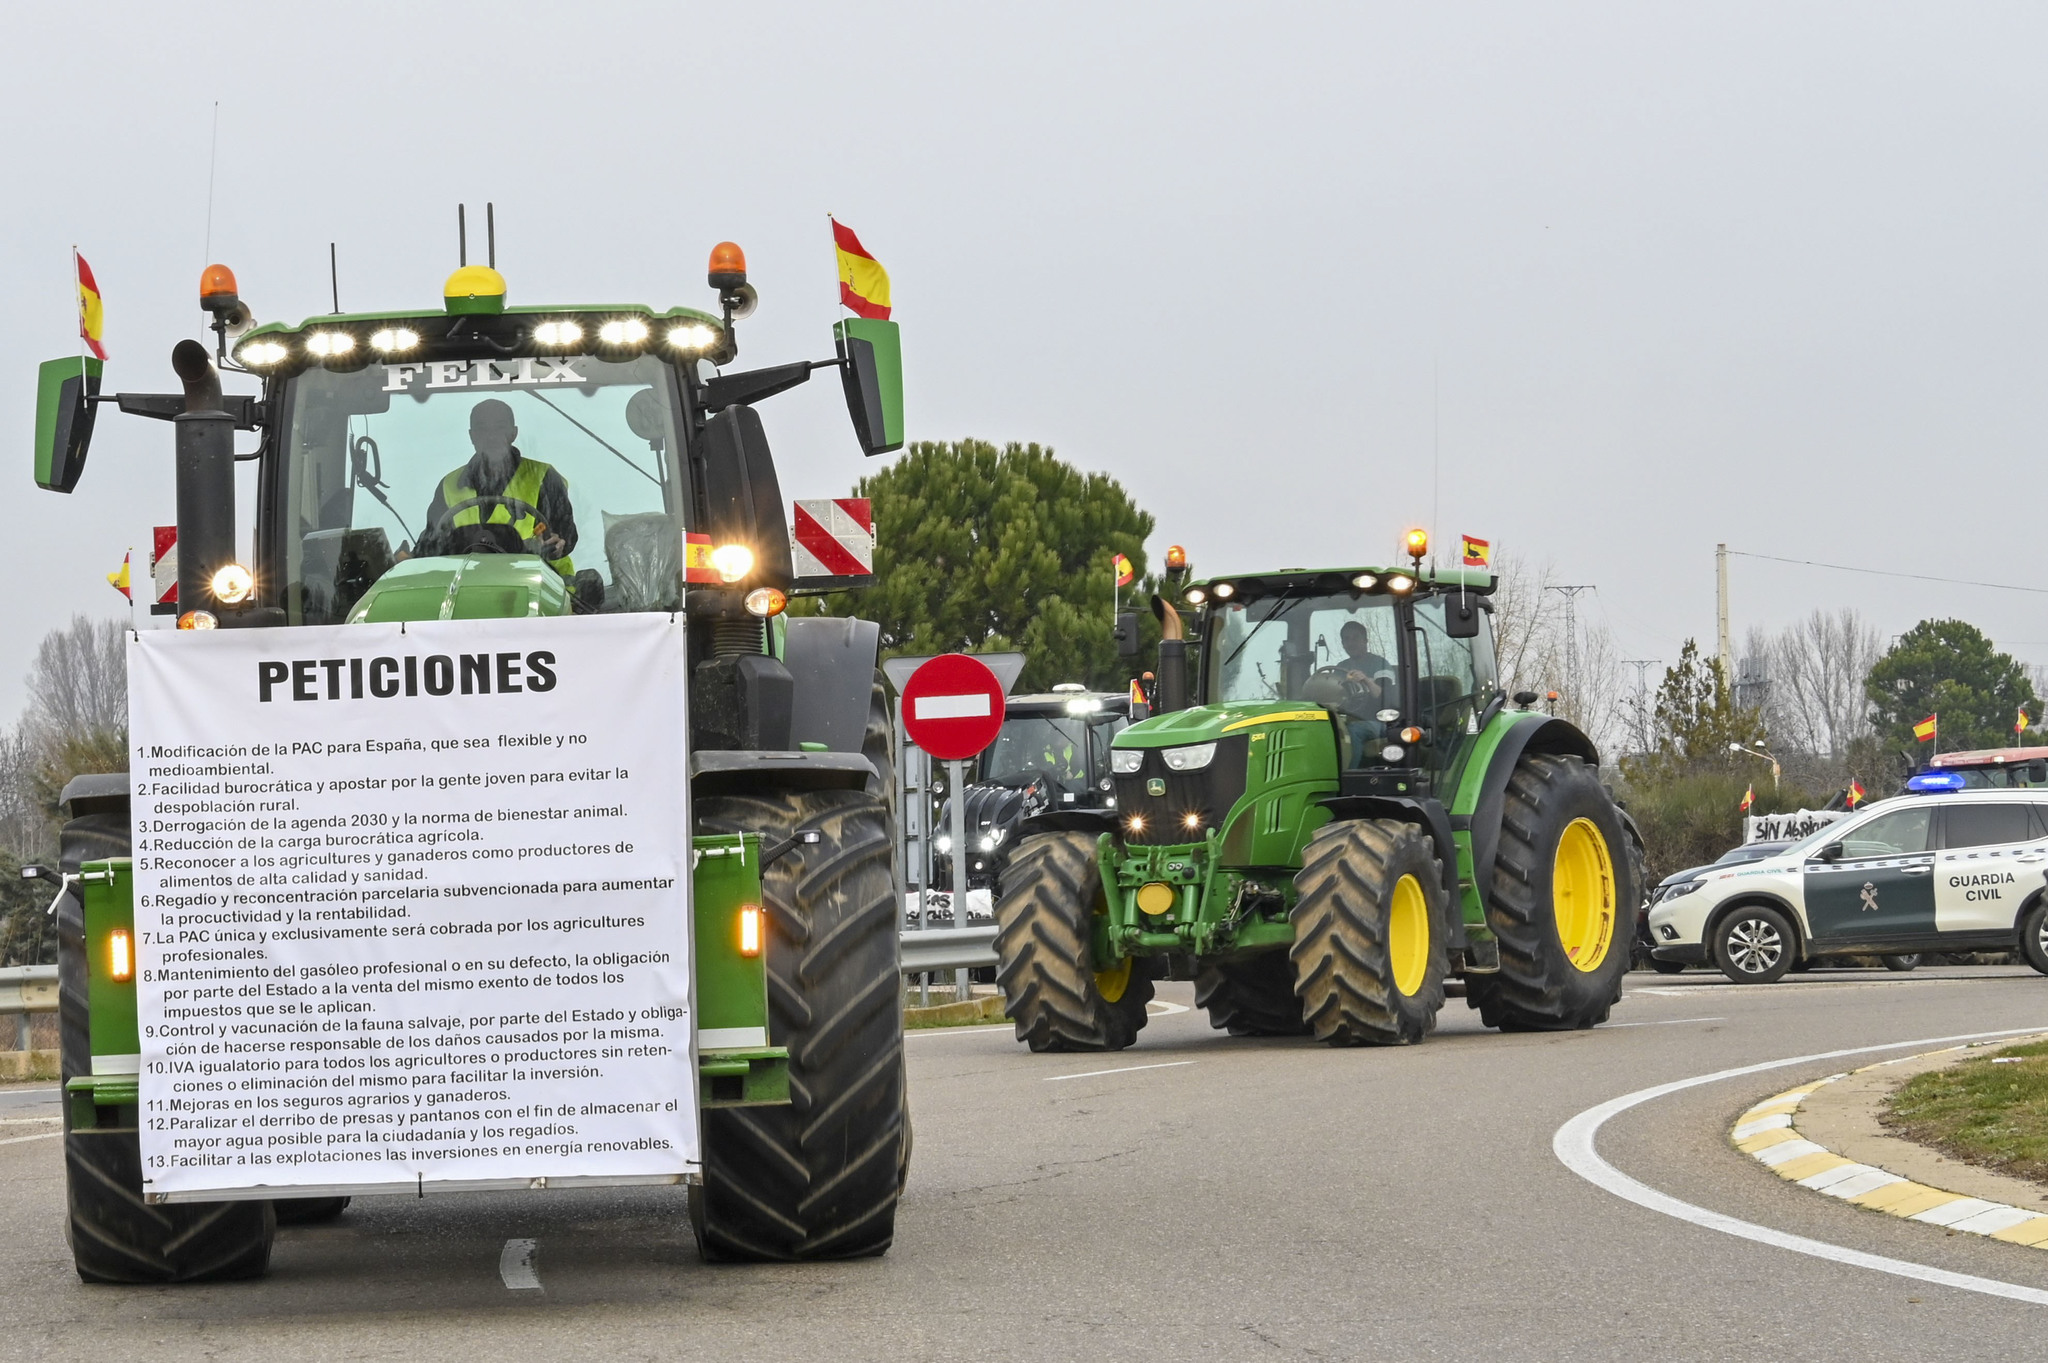 Miles de tractores han salido a las carreteras españolas para protestar por sus condiciones laborales.